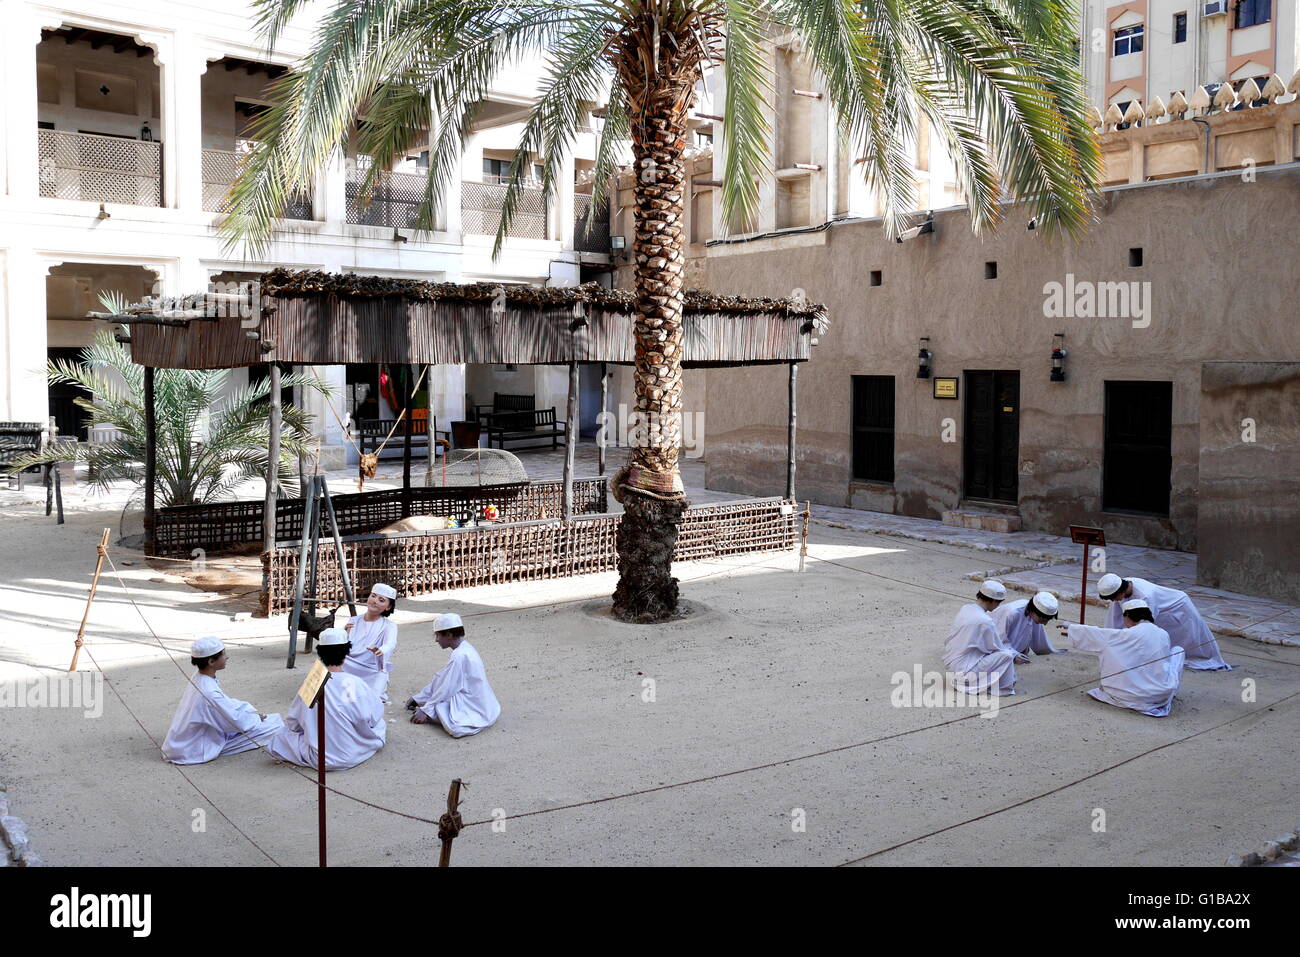 Patio de la casa del patrimonio, con vestidos tradicionalmente muchachos jugando, Deira, Dubai, Emiratos Árabes Unidos. Foto de stock